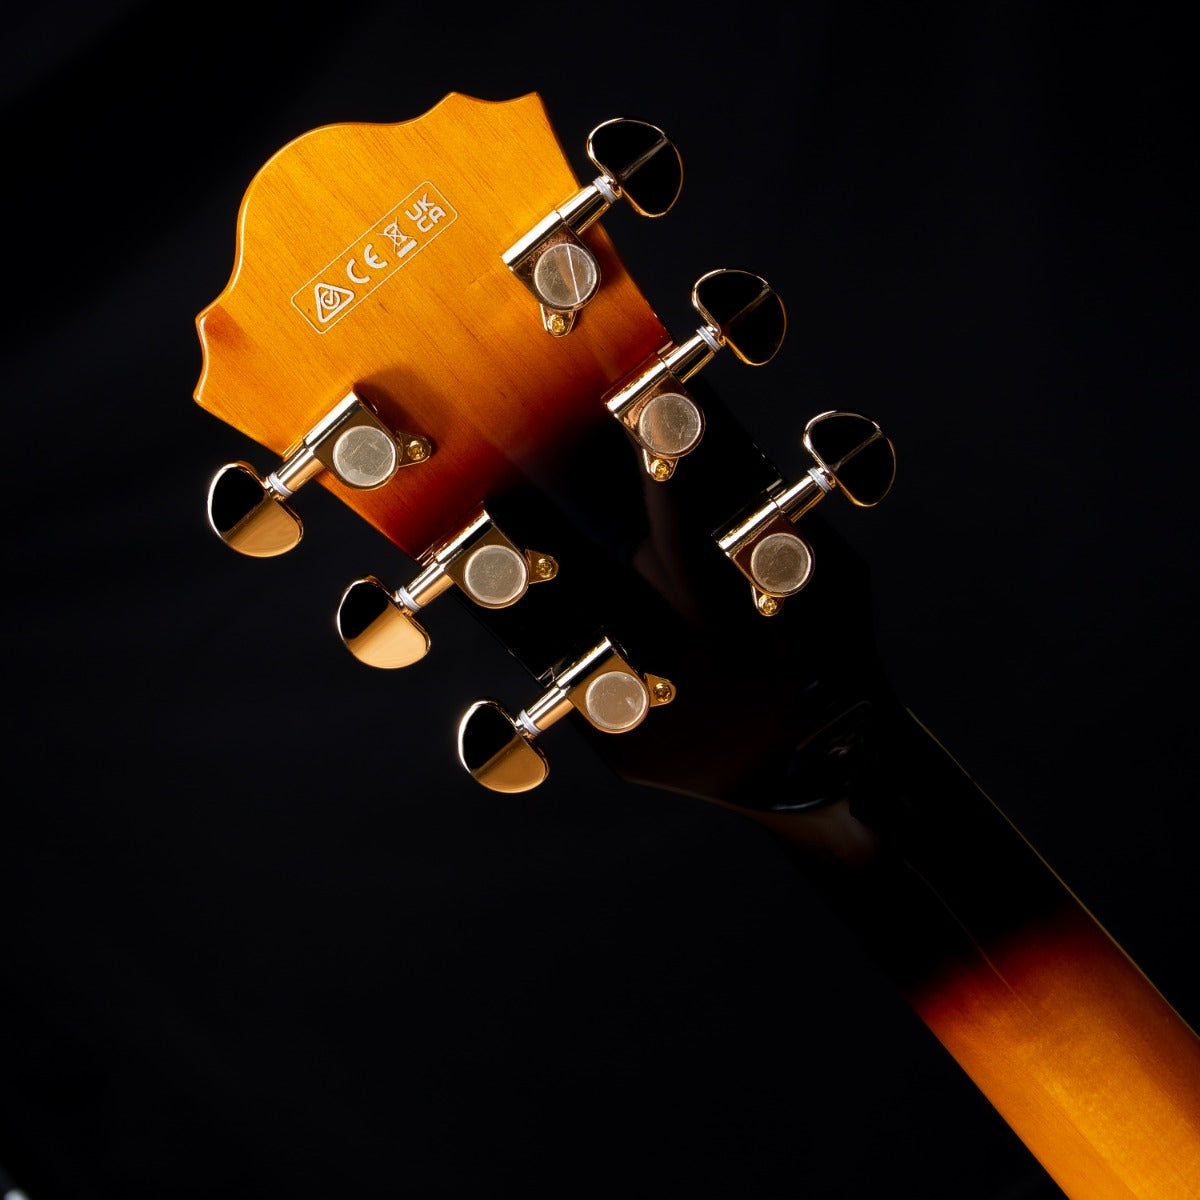 Ibanez AS93FM Artcore Expressionist Electric Guitar - Antique Yellow Sunburst  view 12